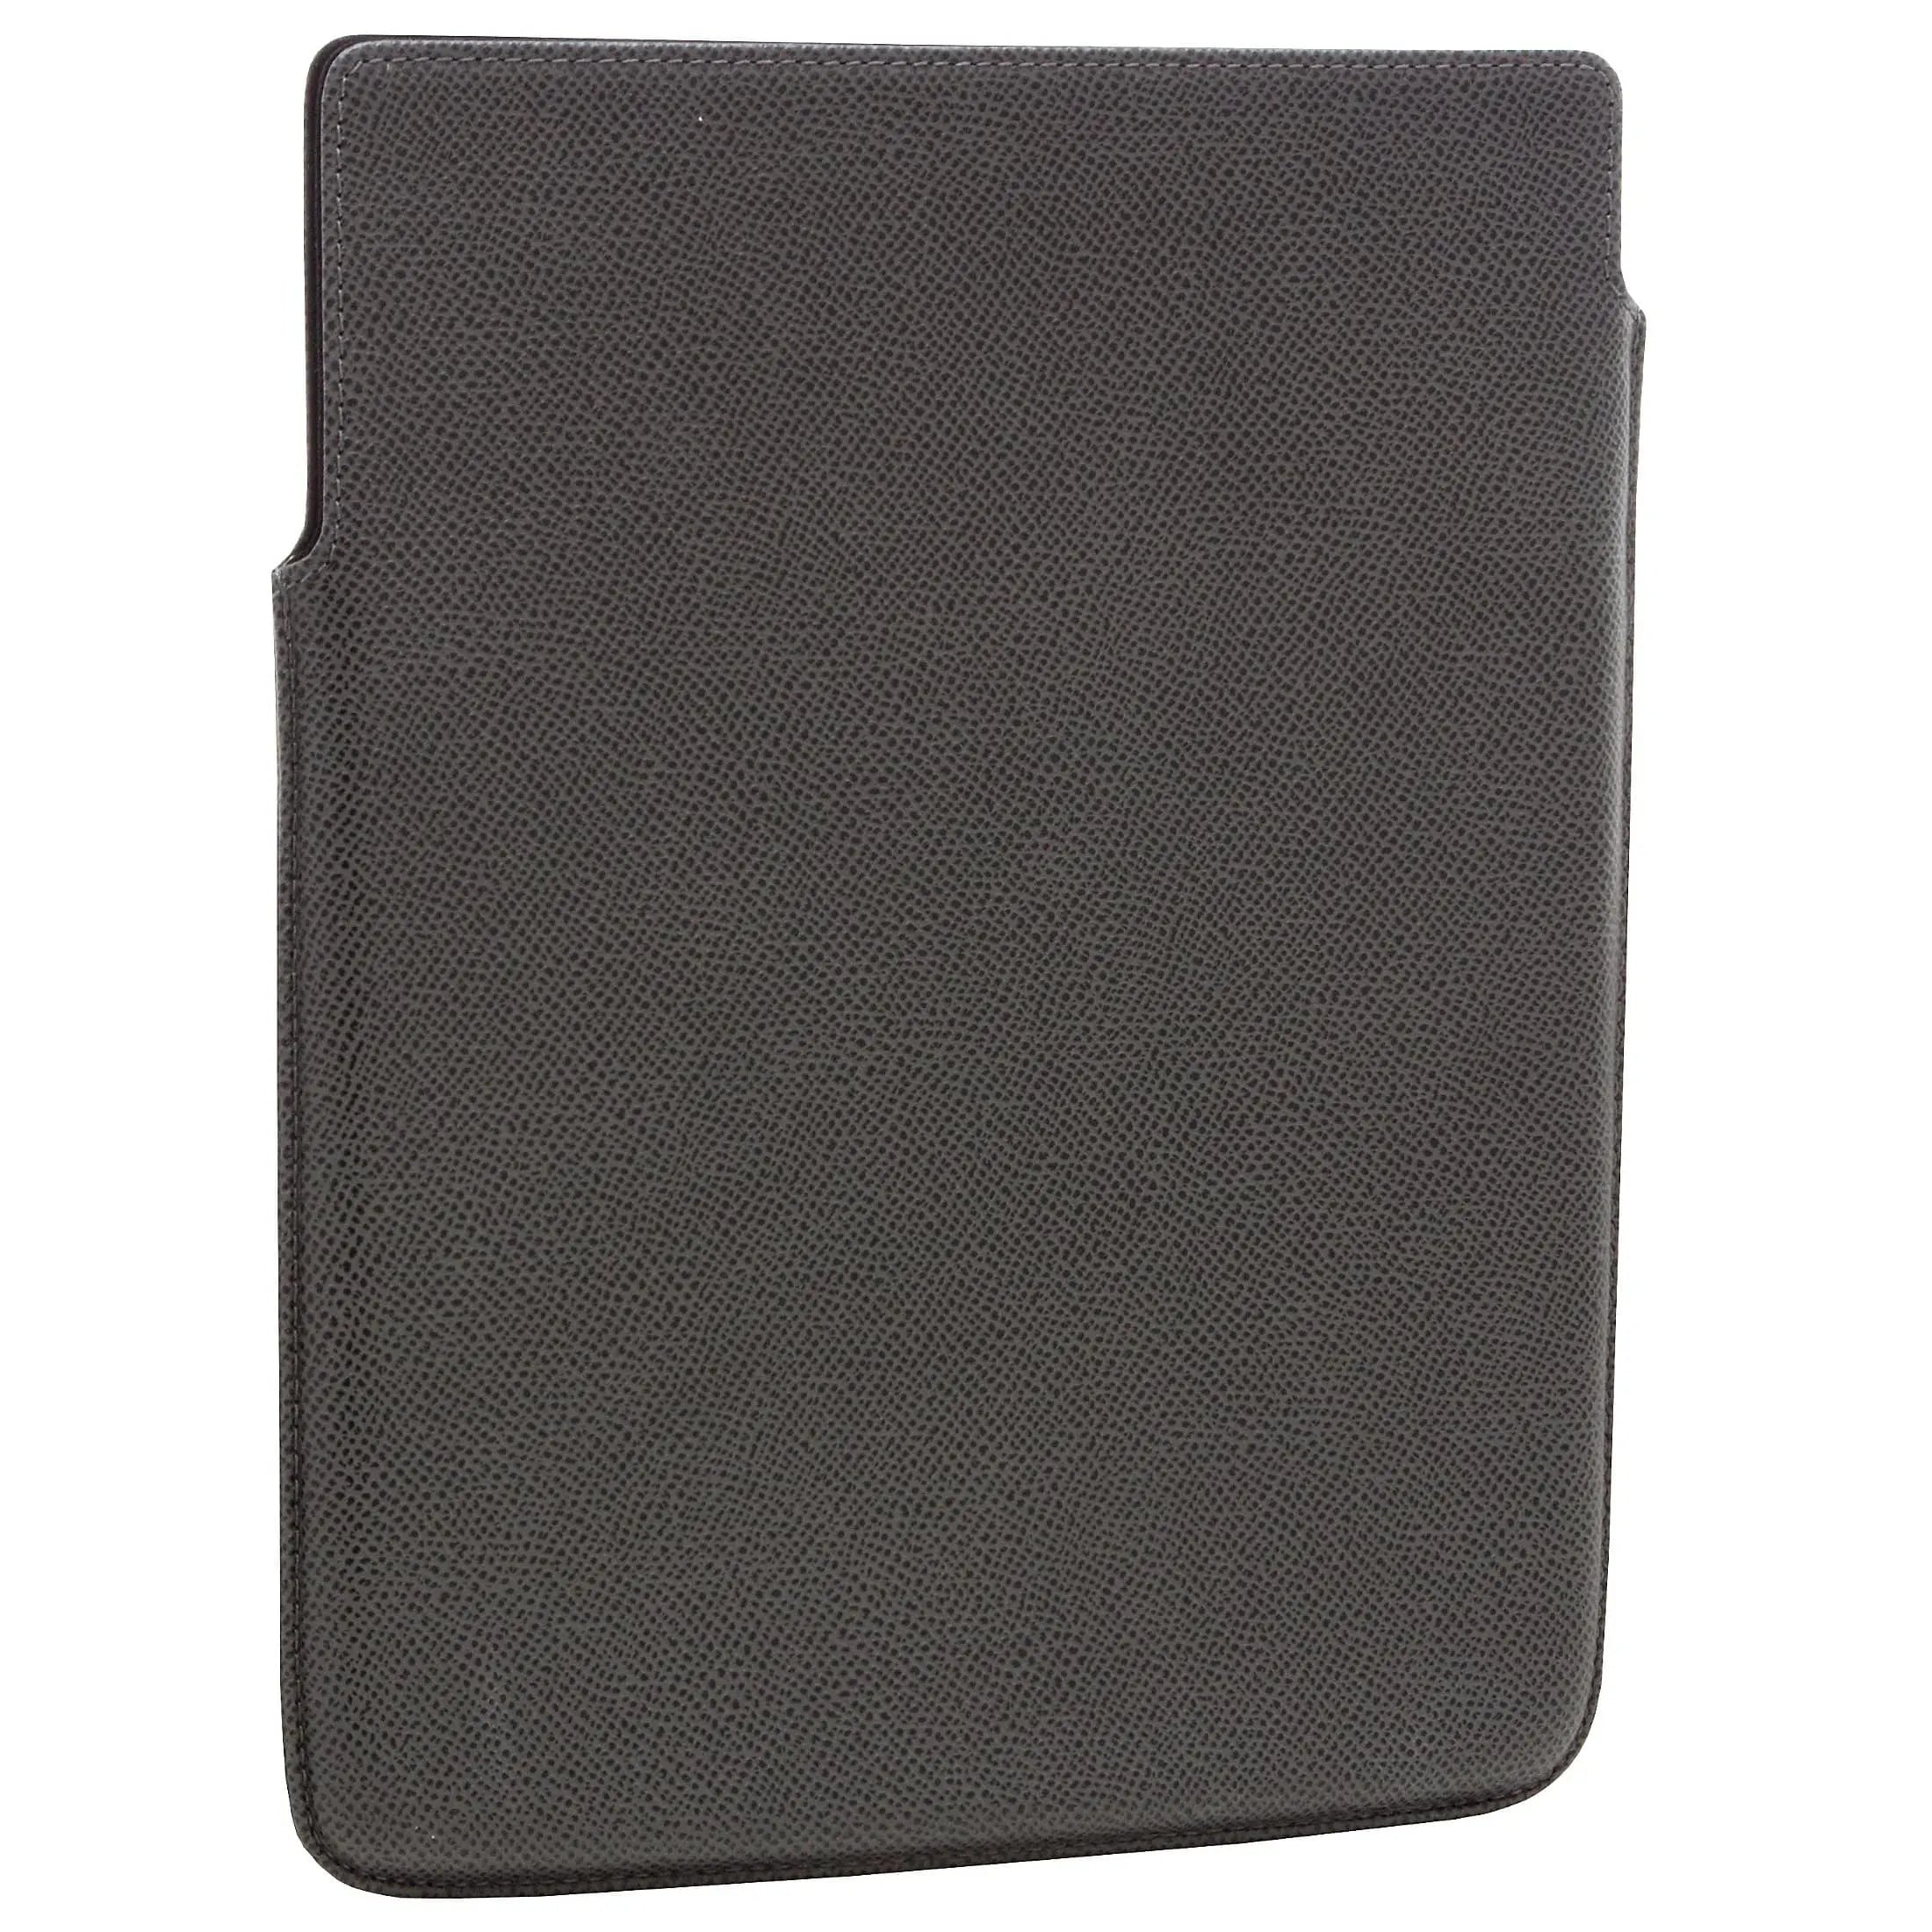 Porsche Design French Classic 2.0 Case Hülle für iPad 4 - dark grey